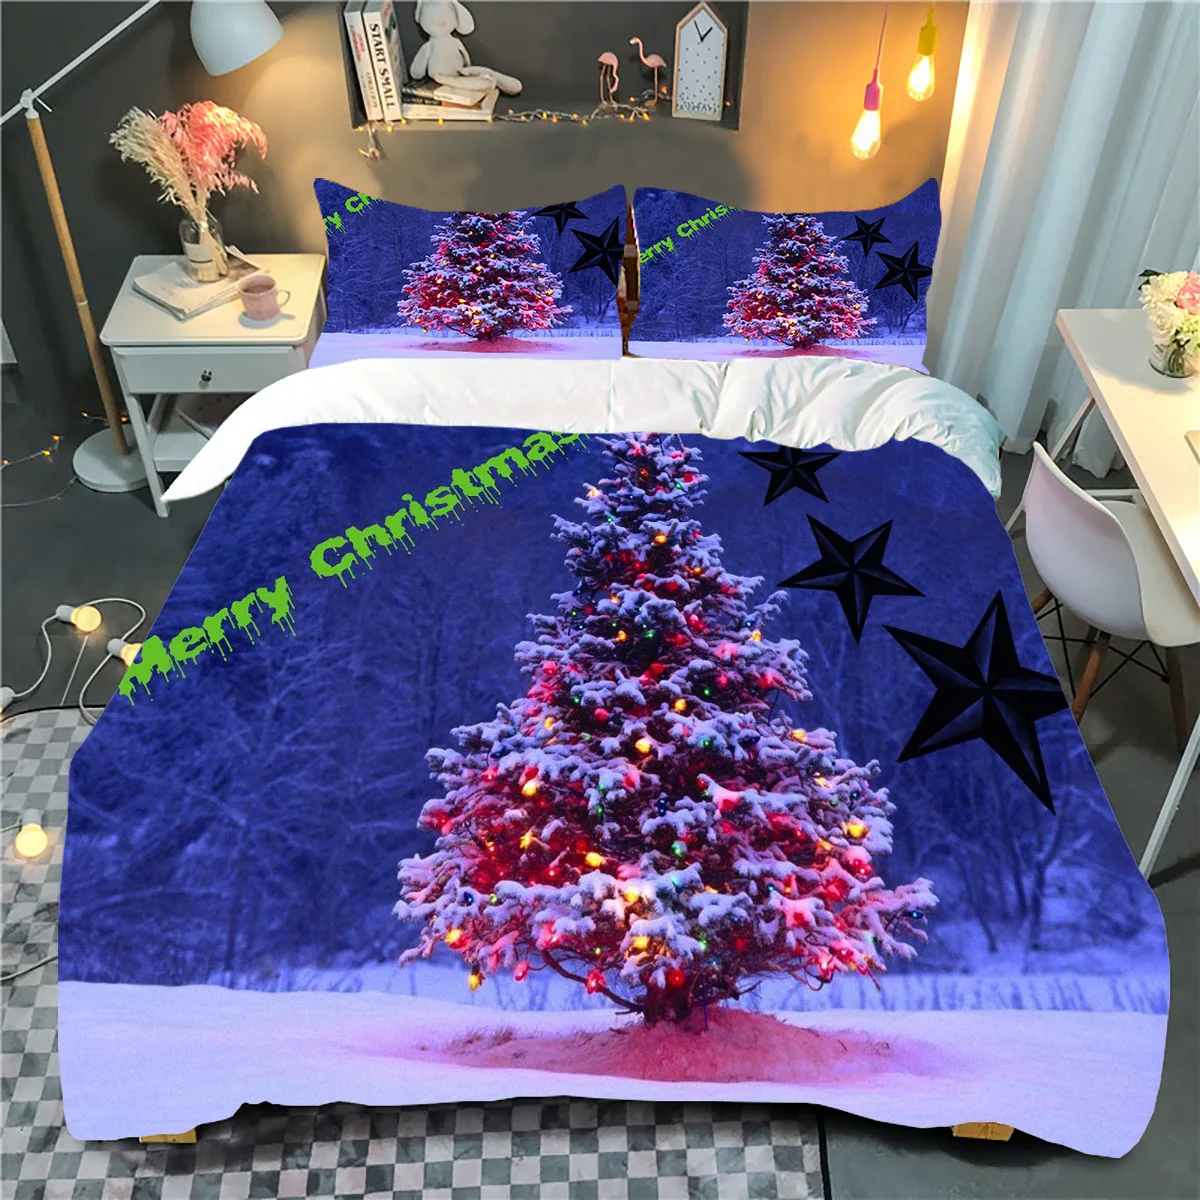 

Комплект постельного белья с рождественским 3d-рисунком, мультяшная простыня/King/Queen, пуховое одеяло, наволочка, домашний текстиль для спальн...